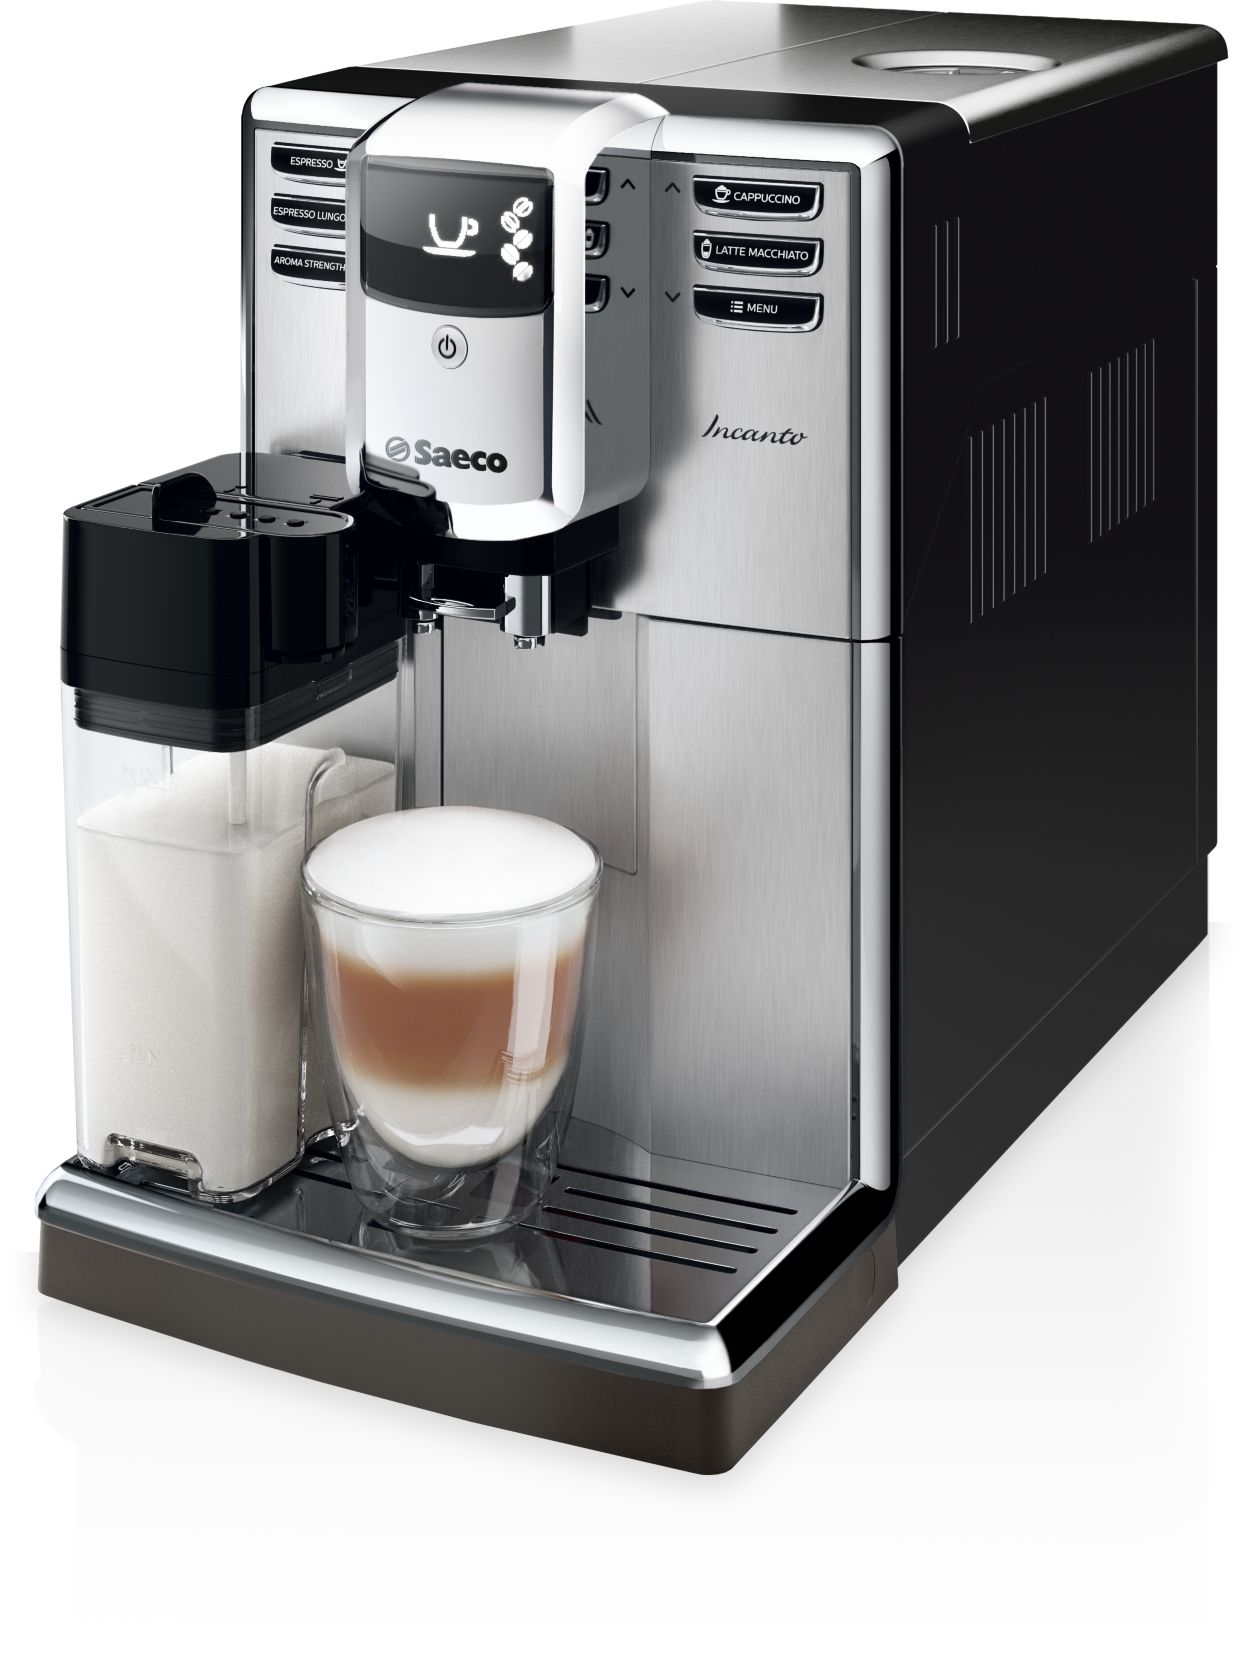 Super-automatic espresso HD8917/47 |